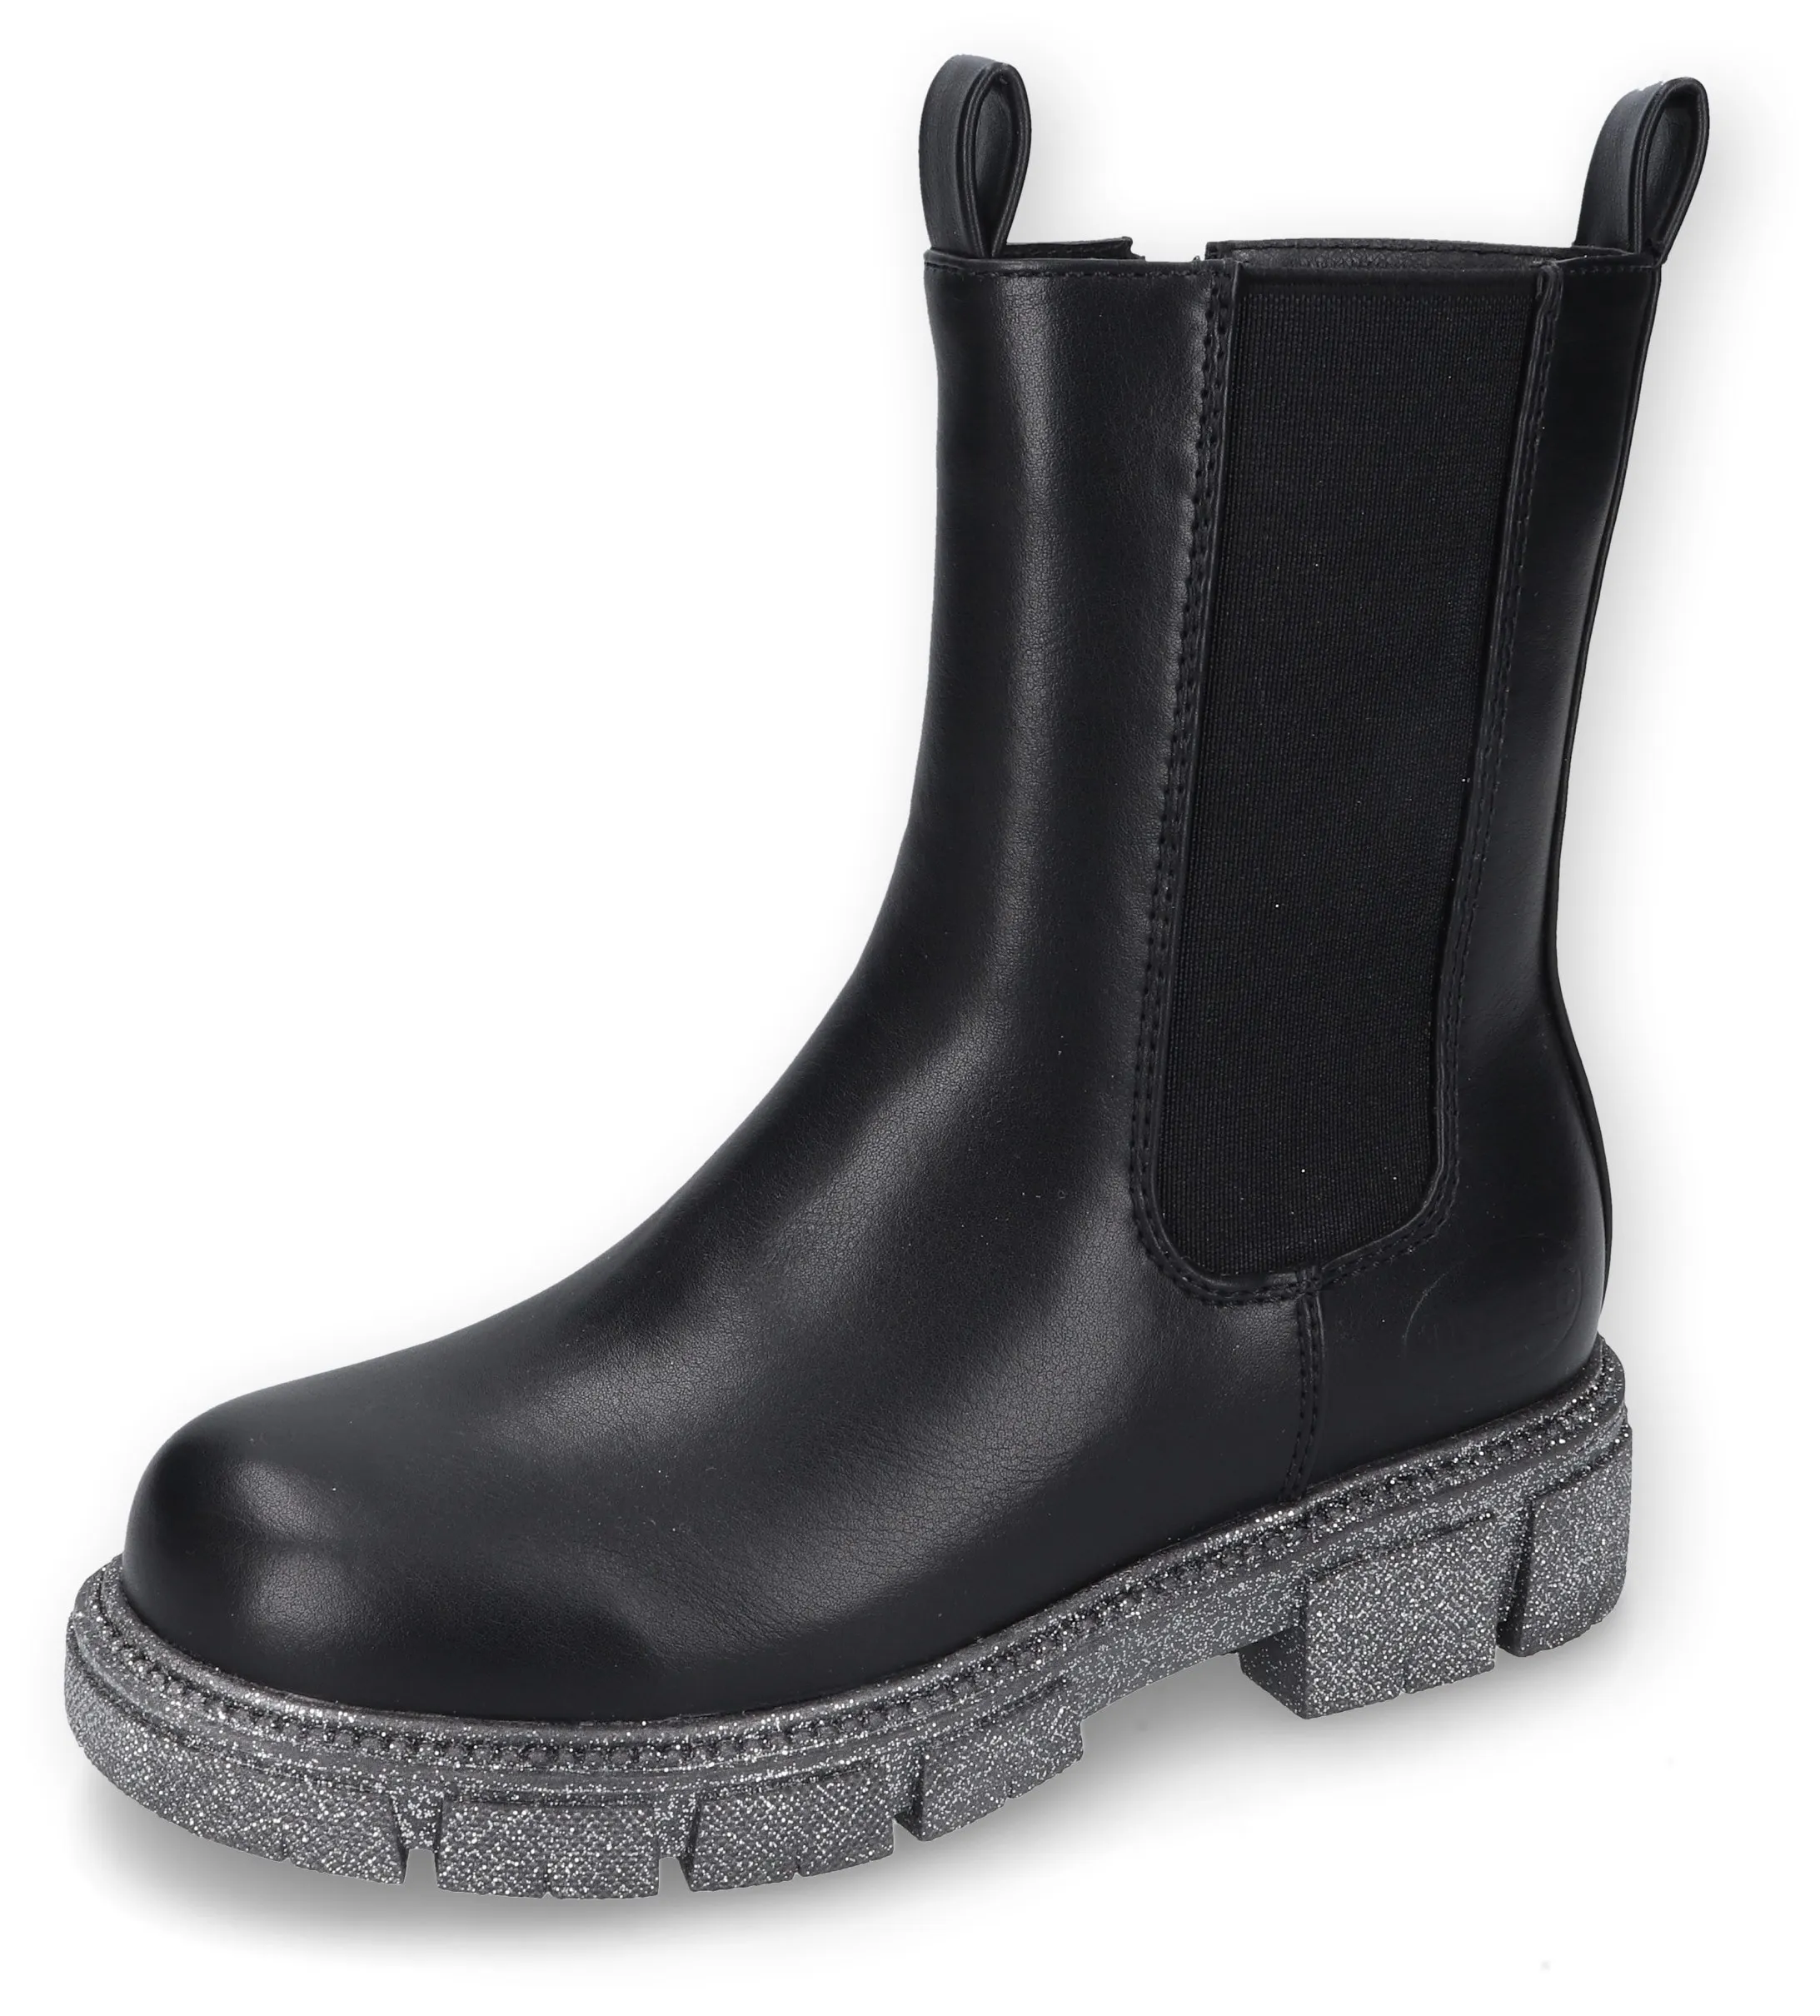 Stiefel DOCKERS BY GERLI Gr. 34, schwarz Kinder Schuhe Stiefel Boots mit cooler Laufsohle